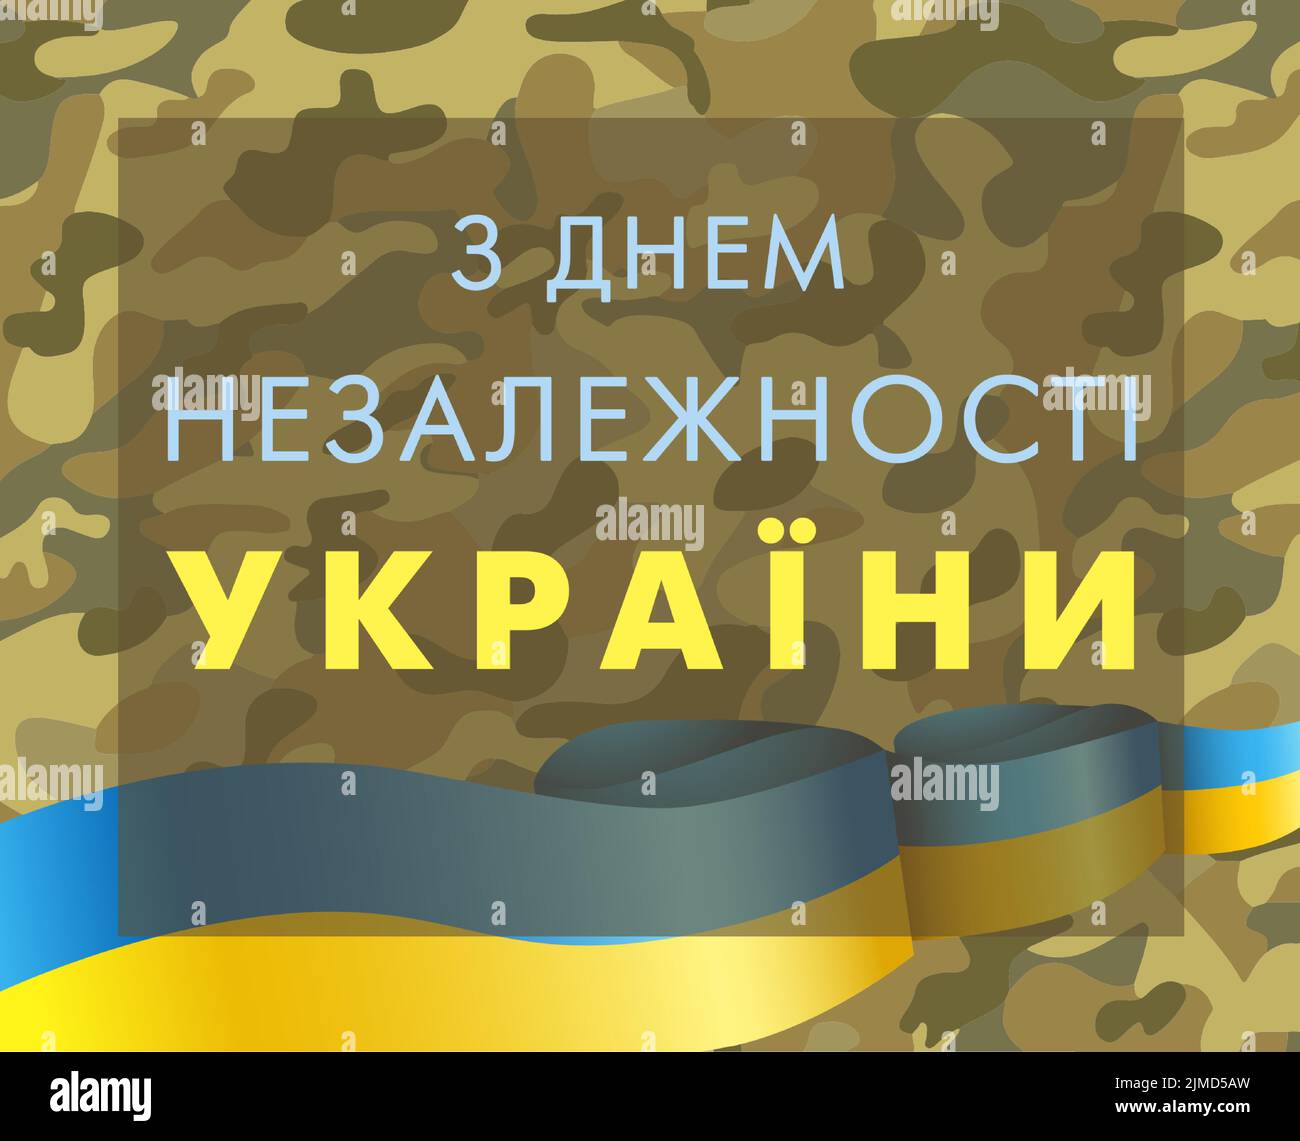 24 août jour de l'indépendance de l'Ukraine avec texte ukrainien. Traduction est - Joyeux jour de l'indépendance Ukraine. 24 août vacances ukrainiennes. Illustration de Vecteur